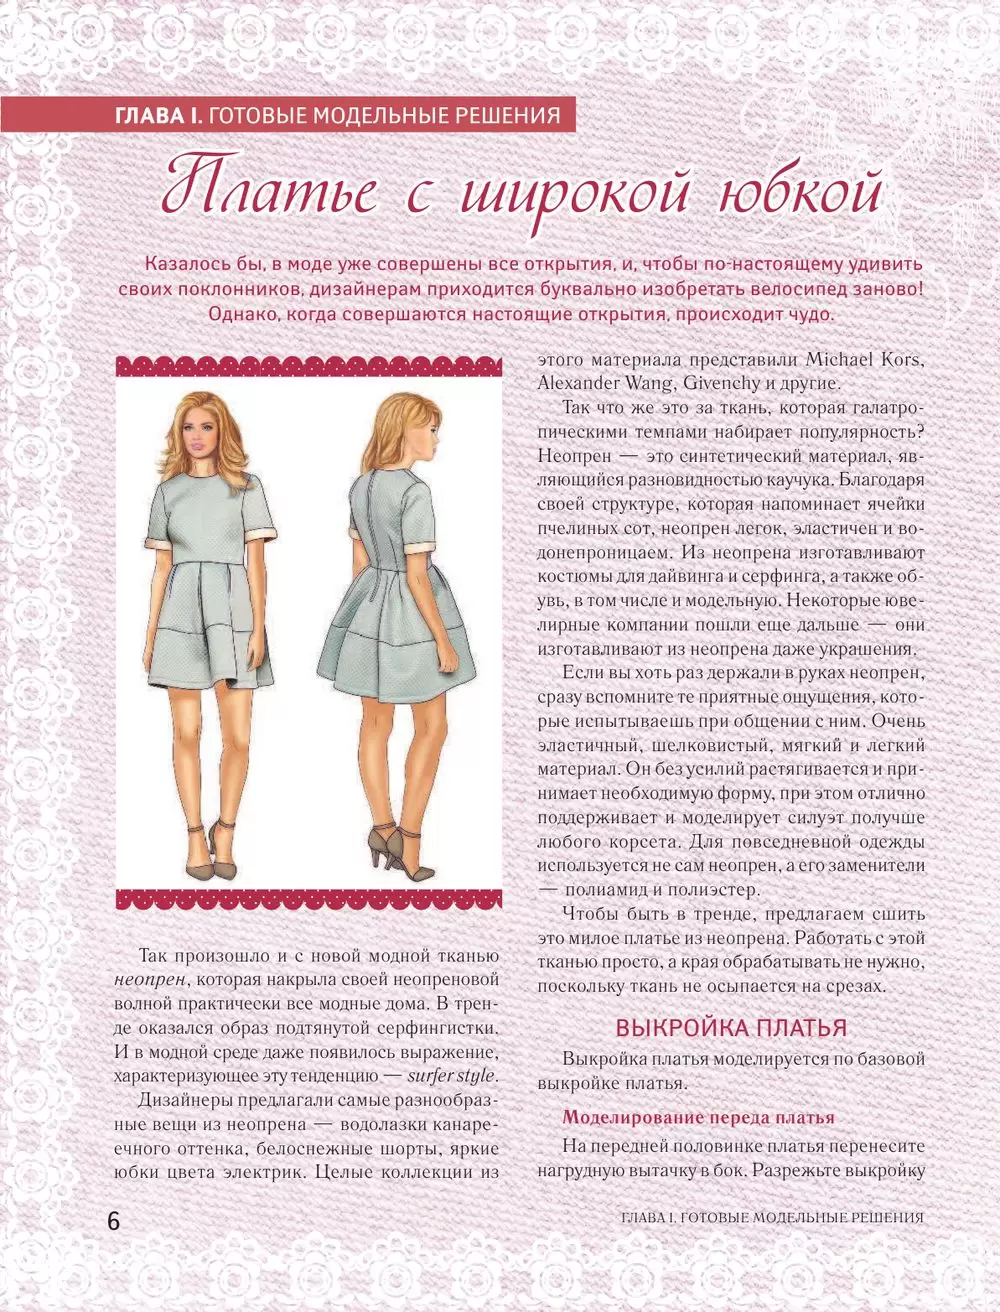 Анастасия Корфиати: Платья от А до Я - Шьем платья без примерок и подгонок